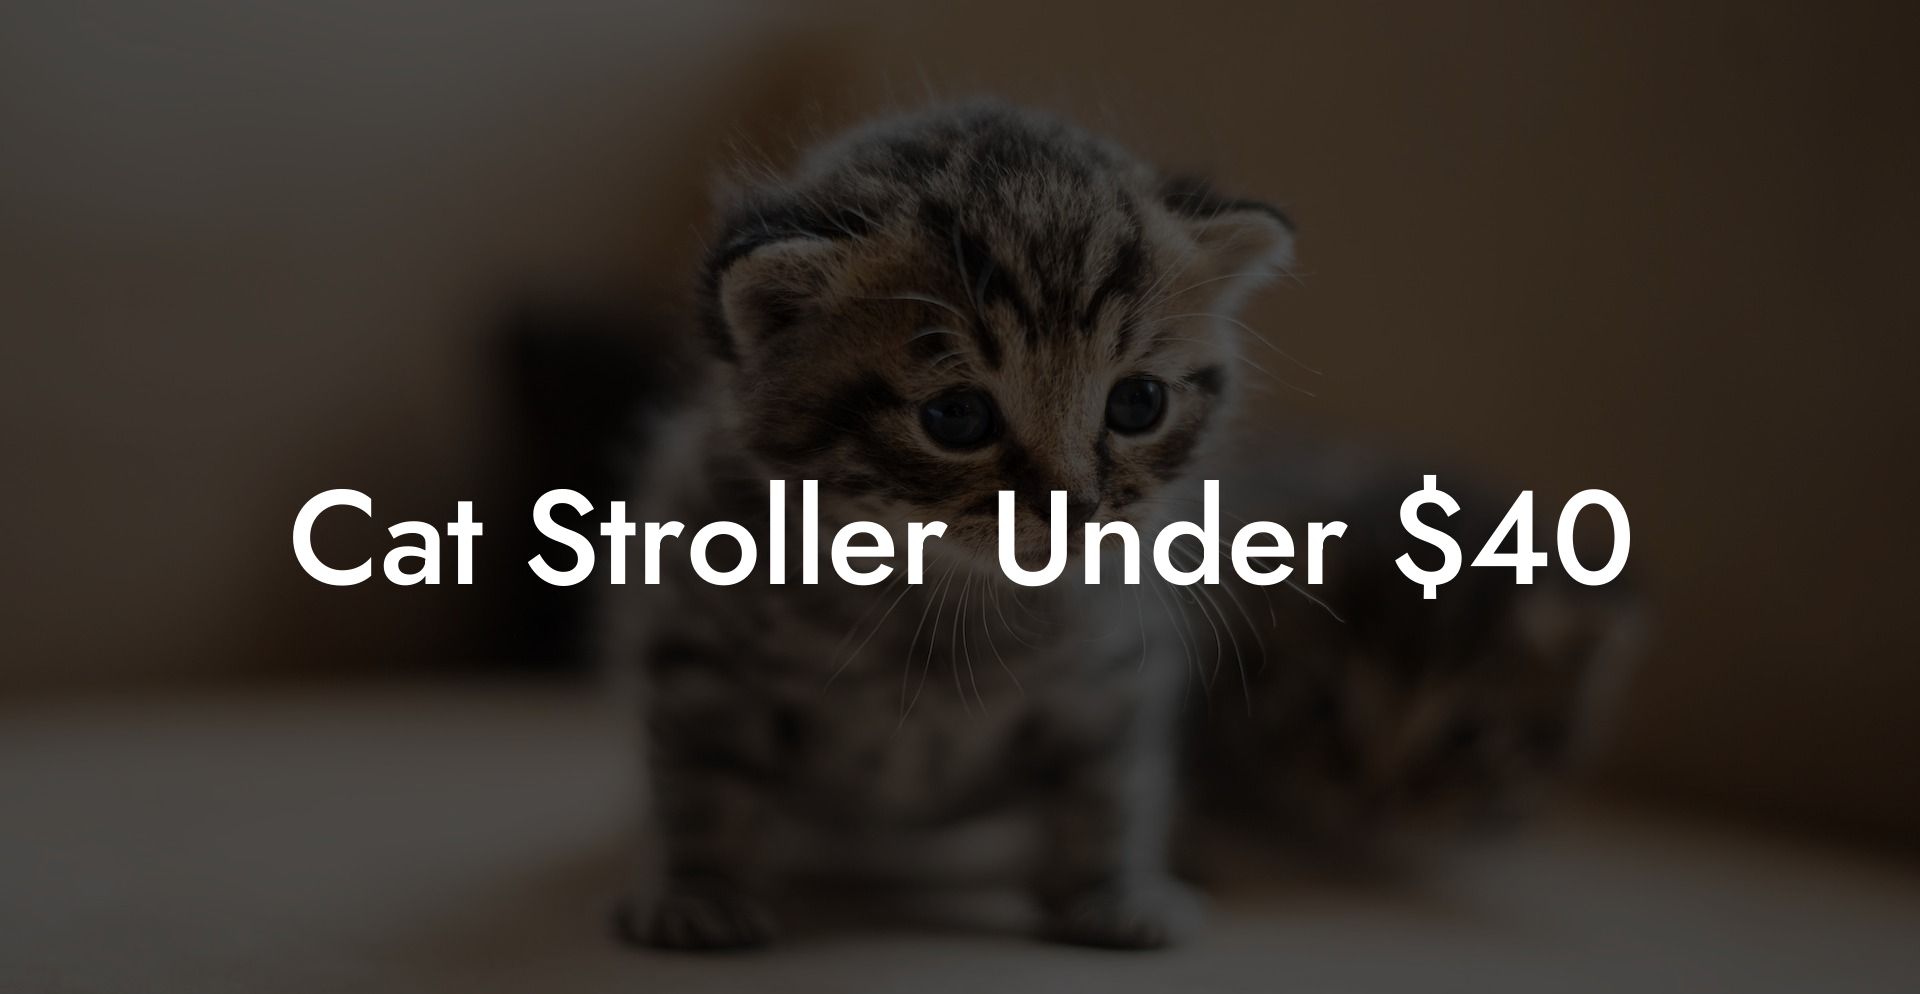 Cat Stroller Under $40